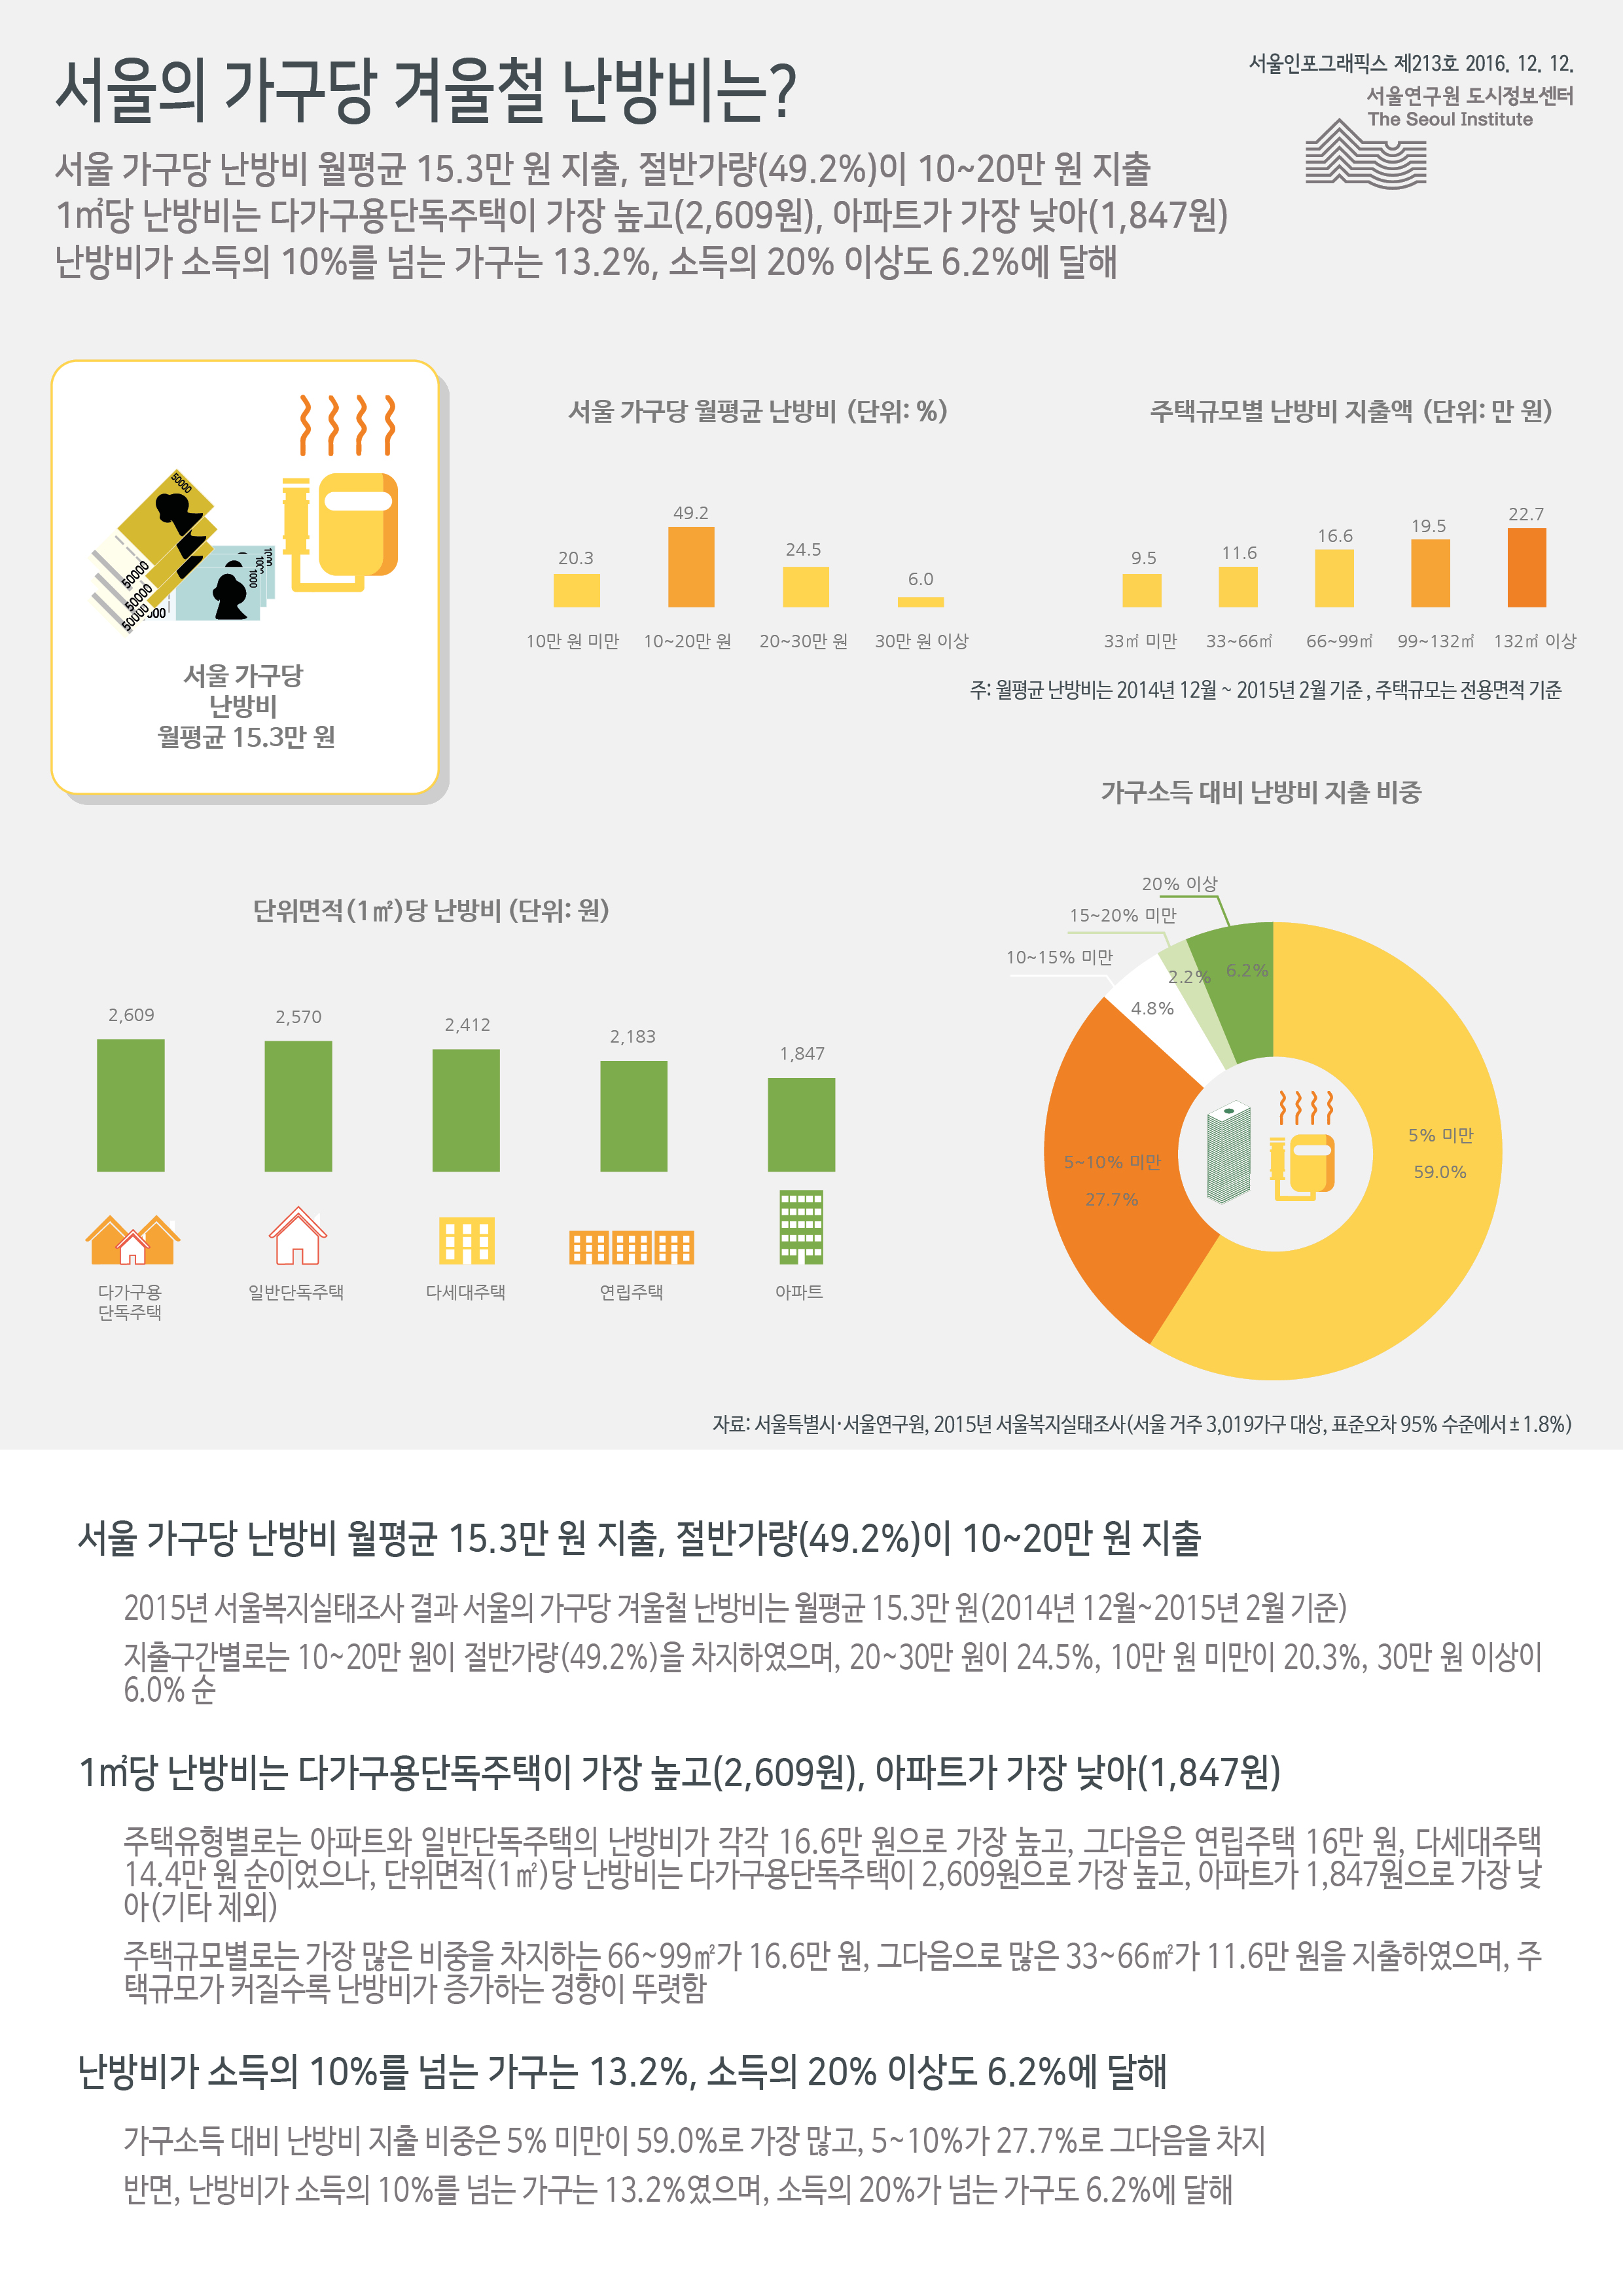 서울의 가구당 겨울철 난방비는? 서울인포그래픽스 제213호 2016년 12월 12일 서울 가구당 난방비 월평균 15.3만 원 지출, 절반가량(49.2%)이 10~20만 원 지출. 1㎡당 난방비는 다가구용단독주택이 가장 높고(2,609원), 아파트가 가장 낮아(1,847원) 난방비가 소득의 10%를 넘는 가구는 13.2%, 소득의 20% 이상도 6.2%에 달함으로 정리될 수 있습니다. 인포그래픽으로 제공되는 그래픽은 하단에 표로 자세히 제공됩니다.